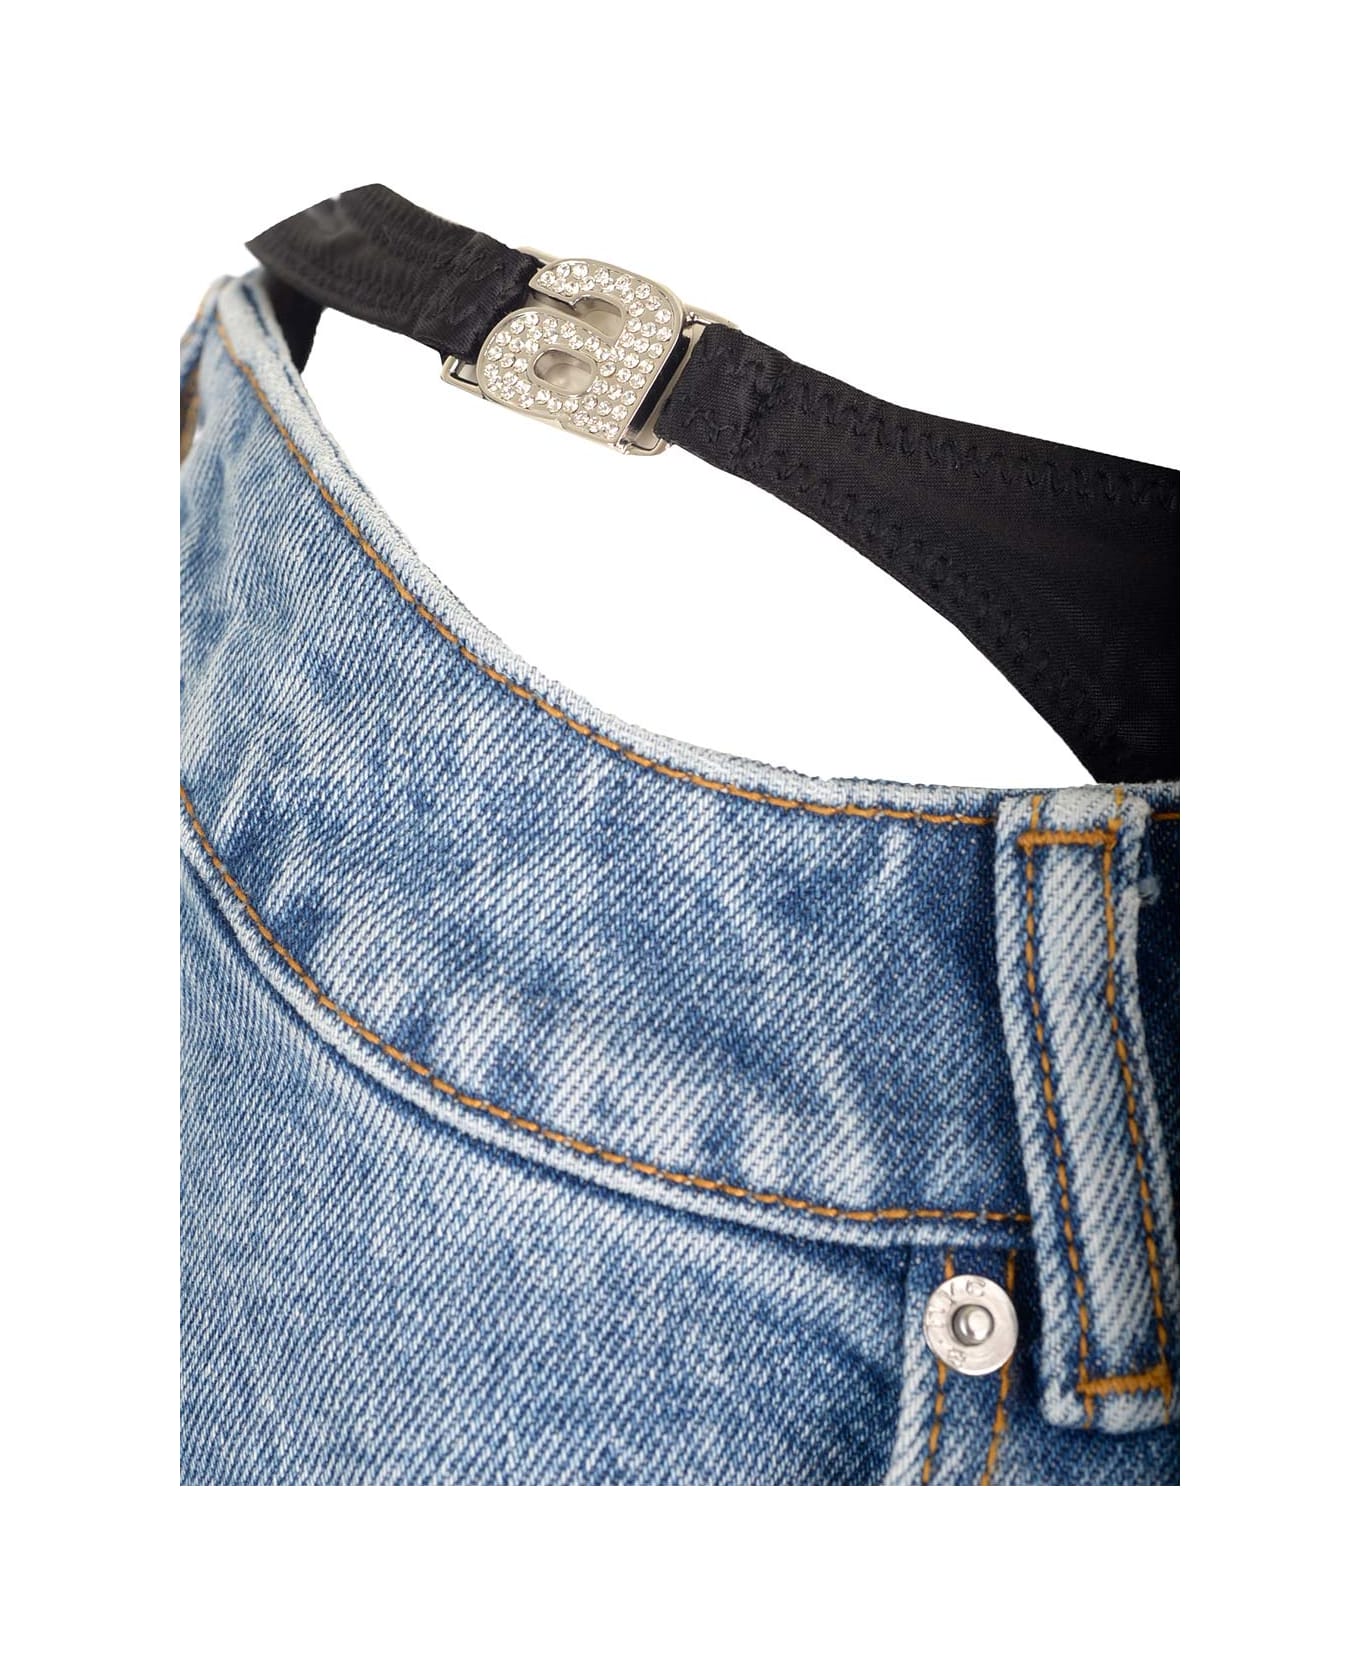 Alexander Wang Visible Underwear Jeans - Blu Denim デニム